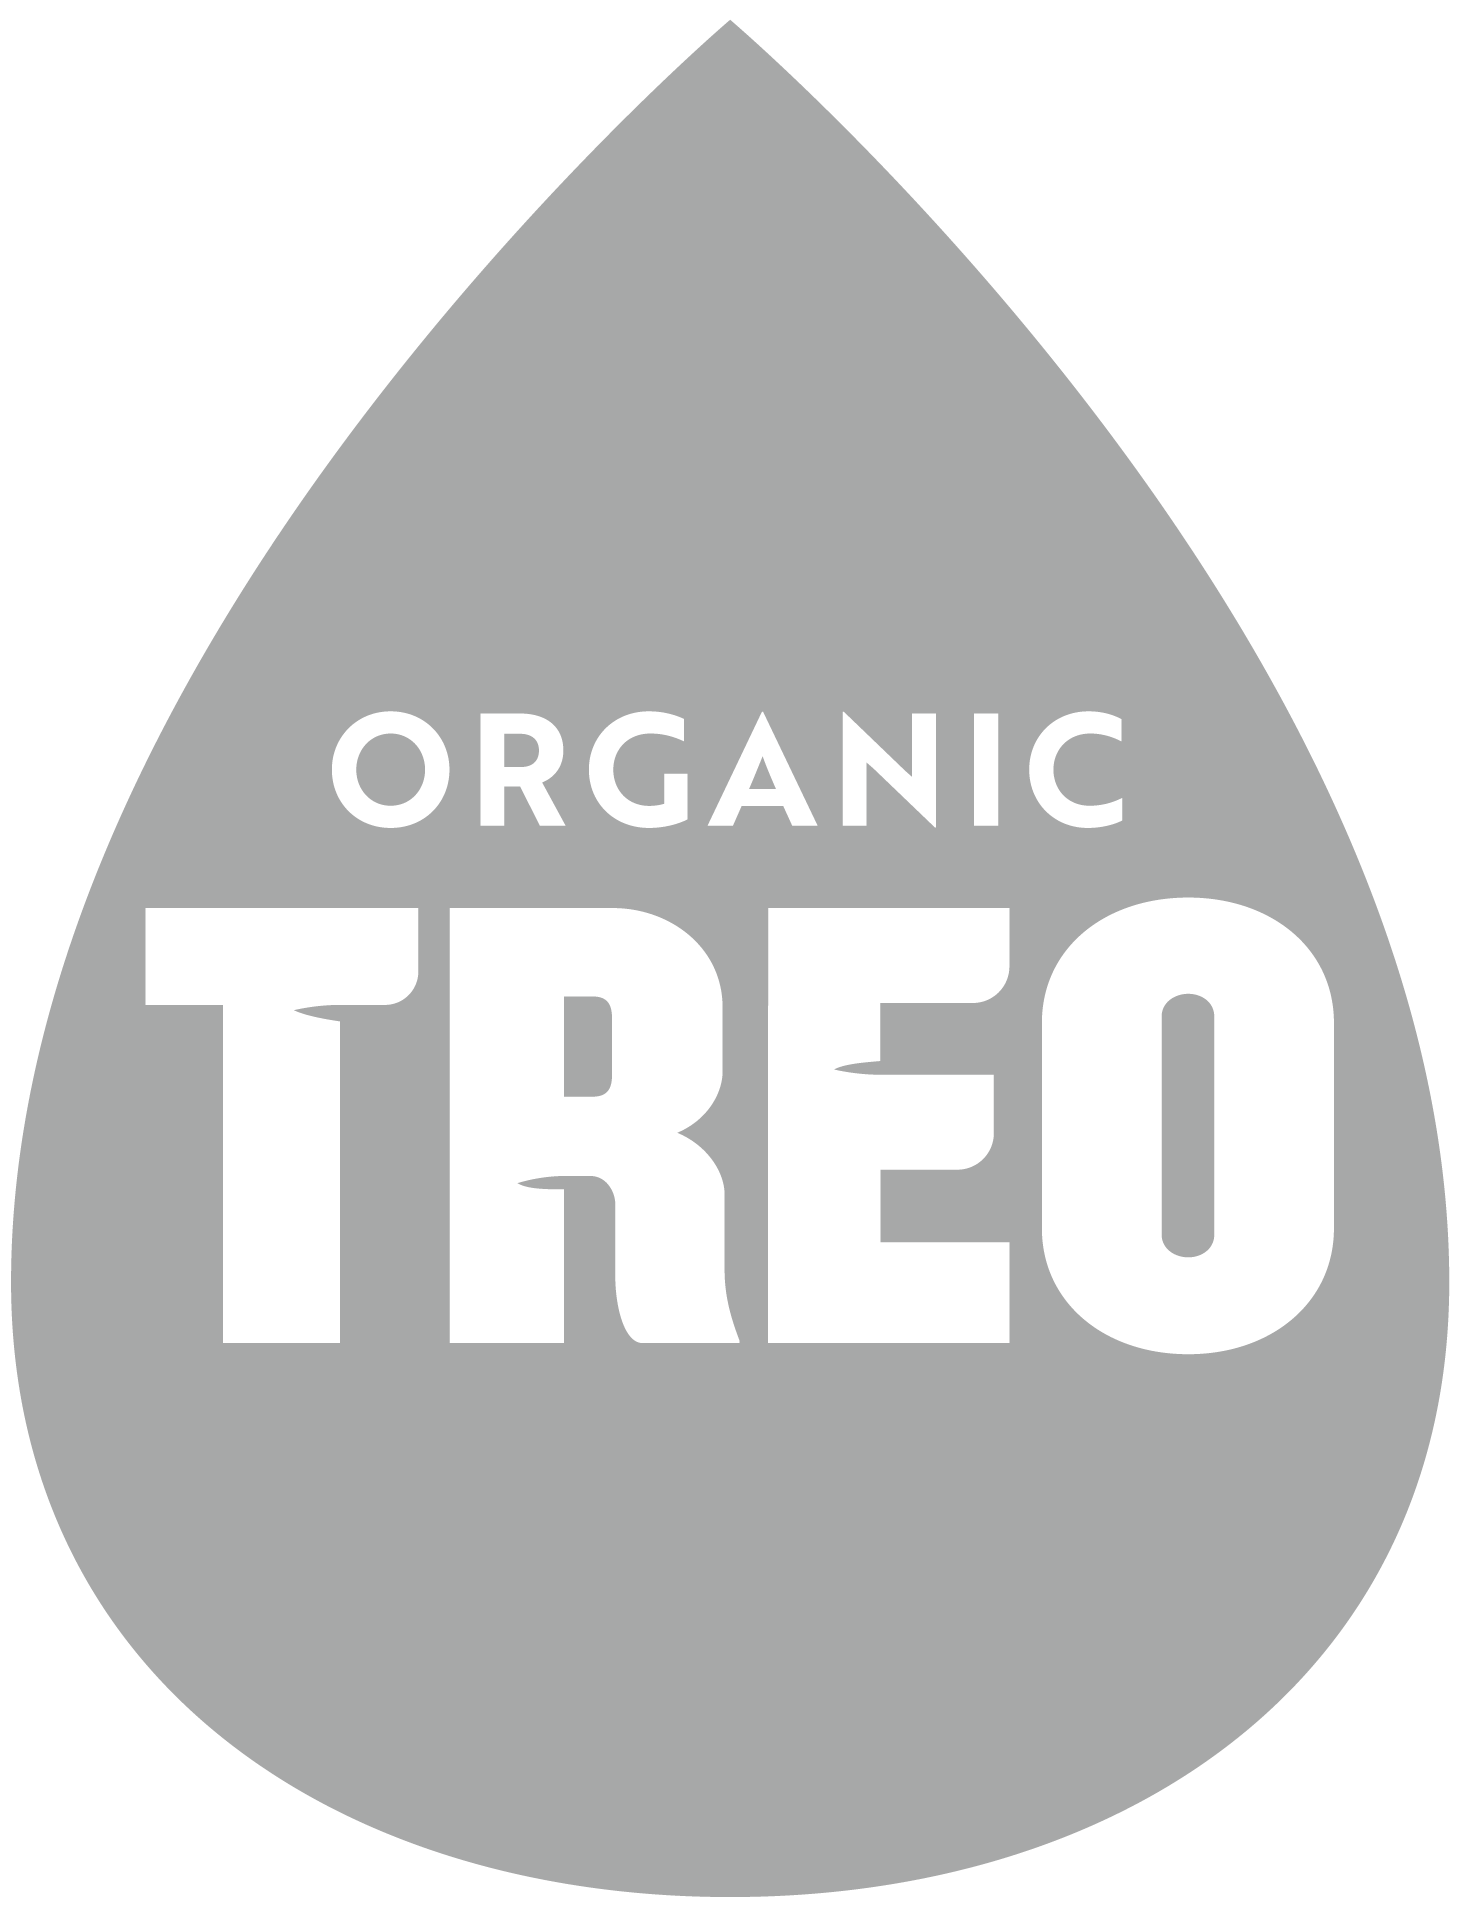 Treo Fruit & Birch Water, Organic, Strawberry - 16 fl oz